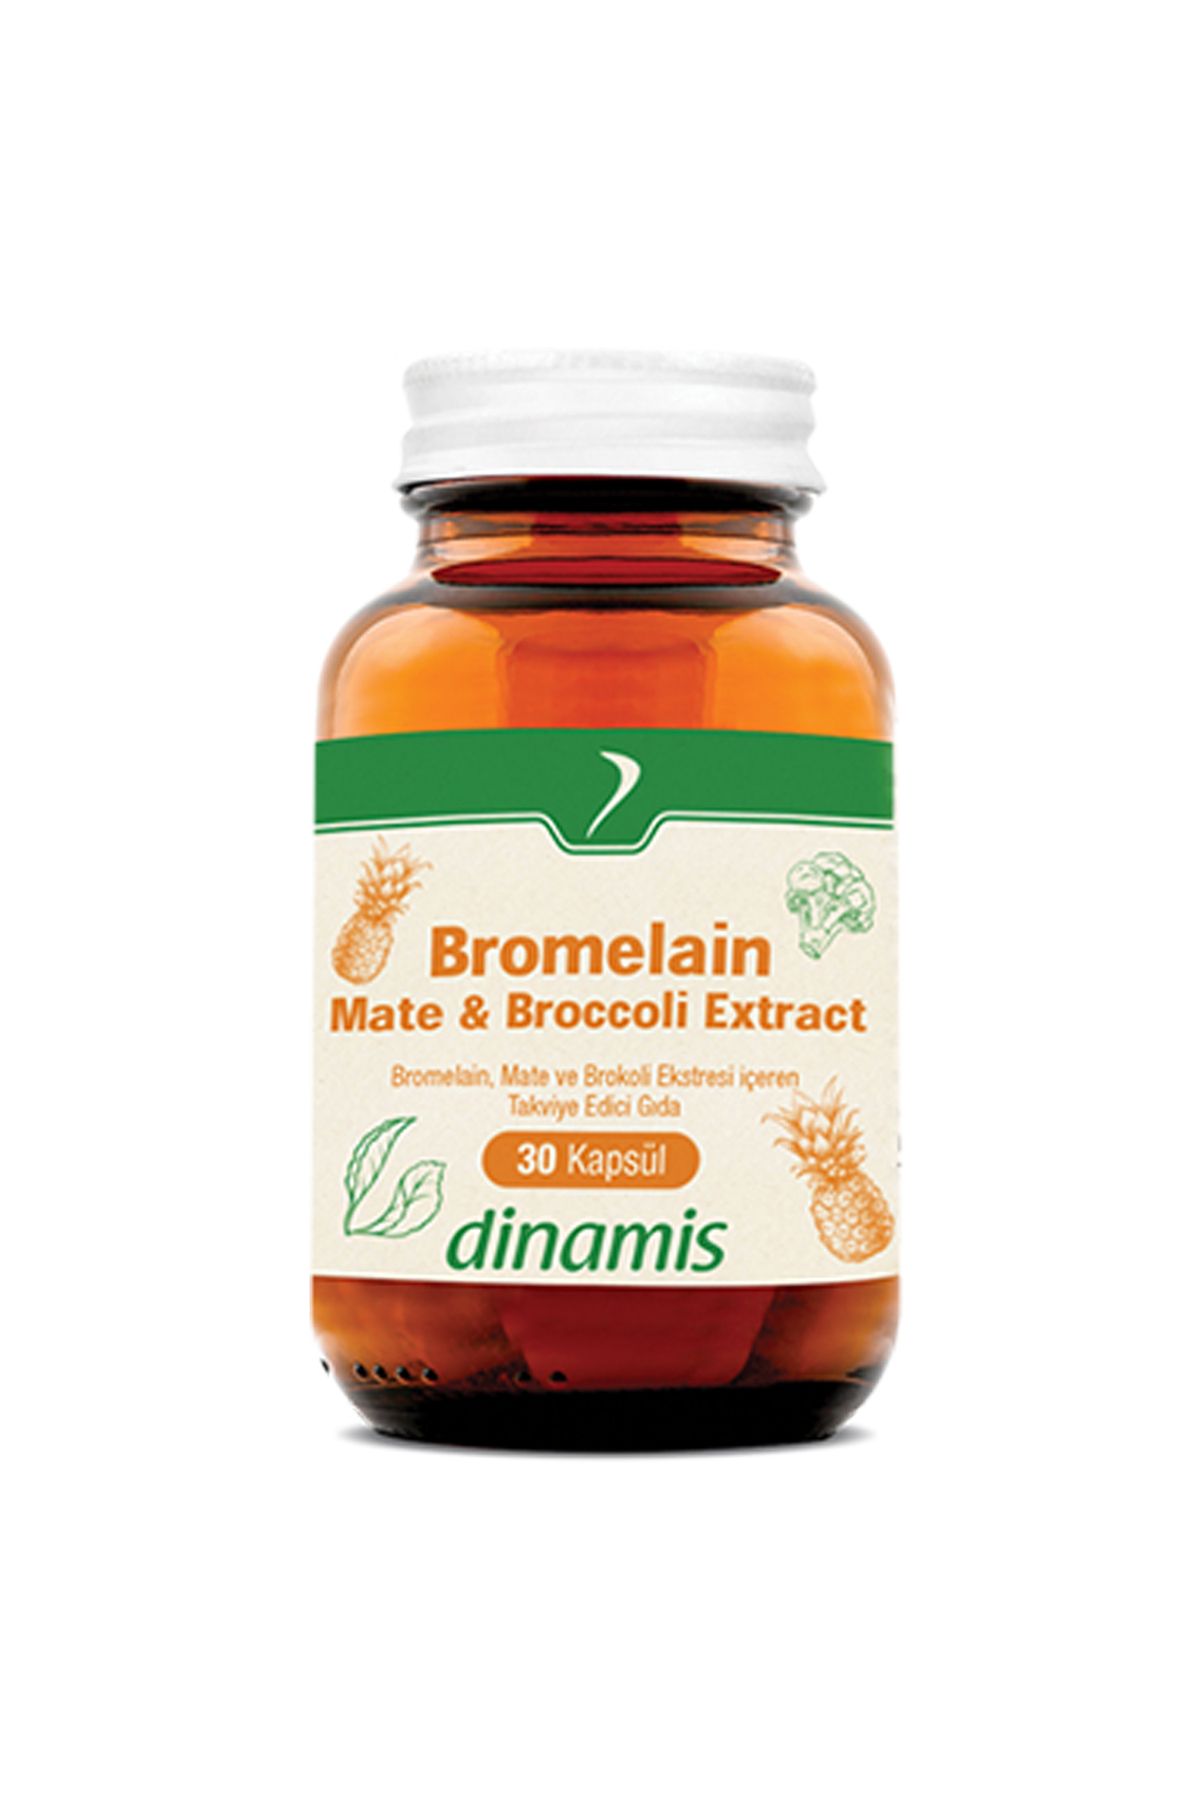 DİNAMİS Dinamis Bromelain Mate Broccoli Extract 30 Kapsül